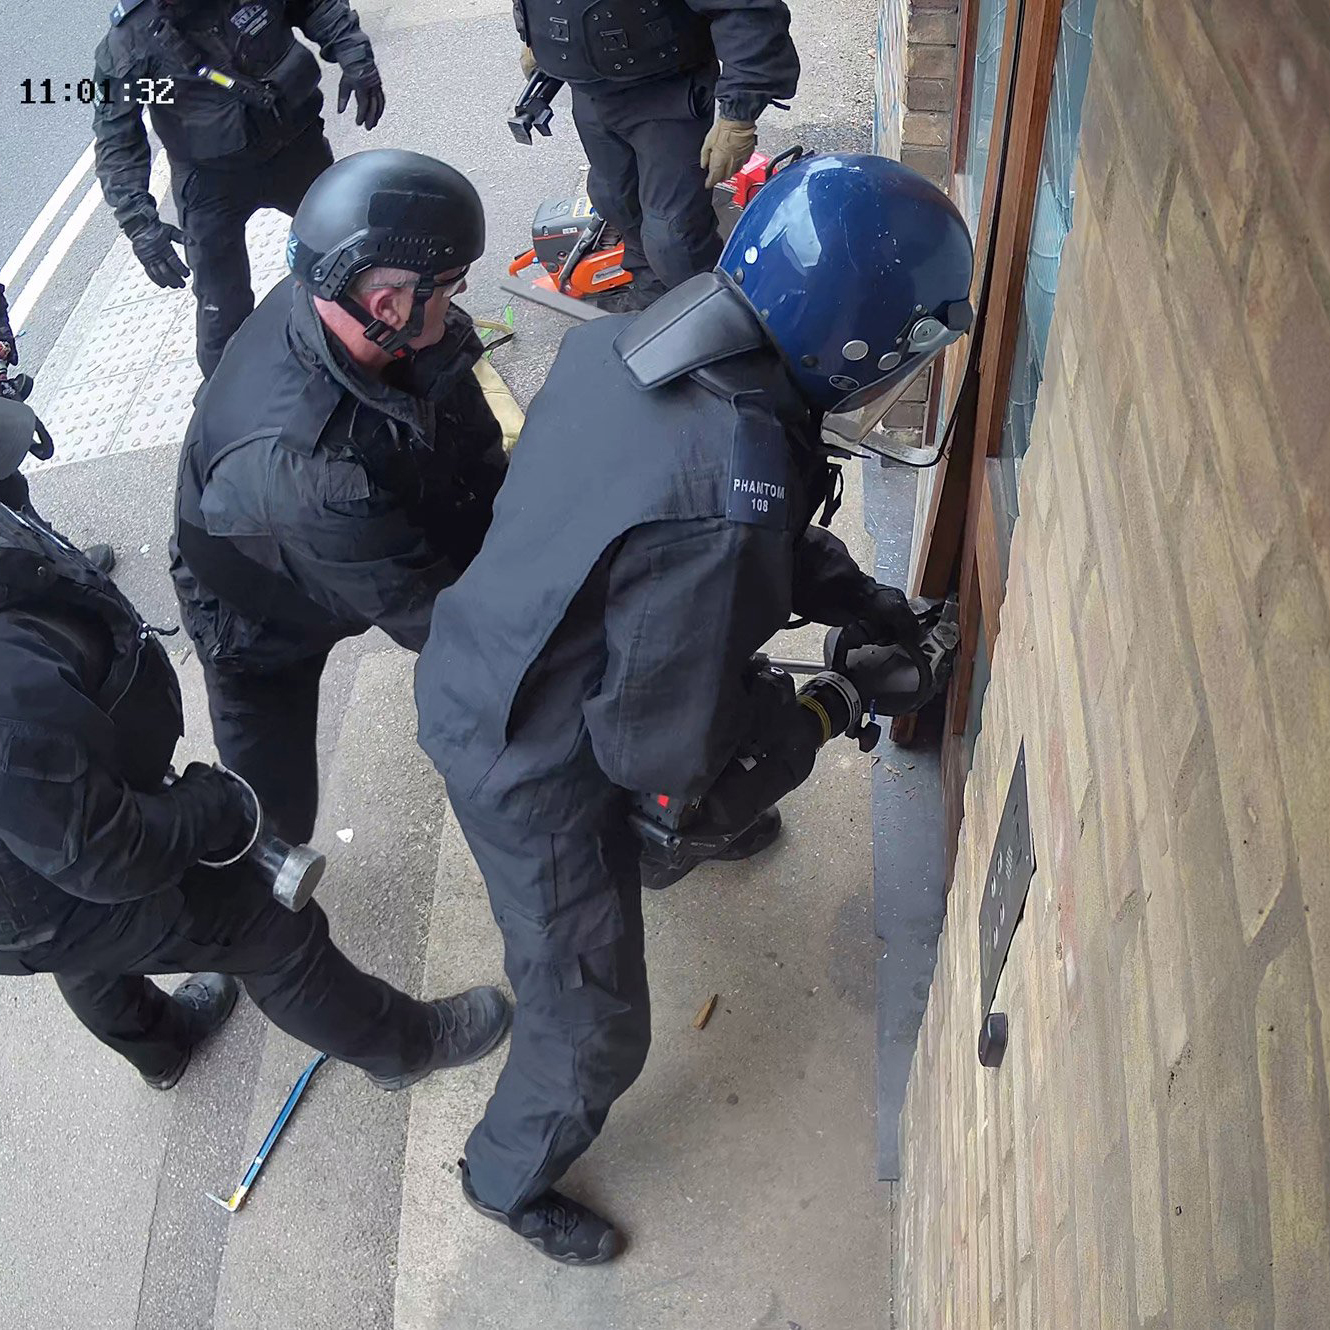 Footage of sinister police raid on Antepavilion building